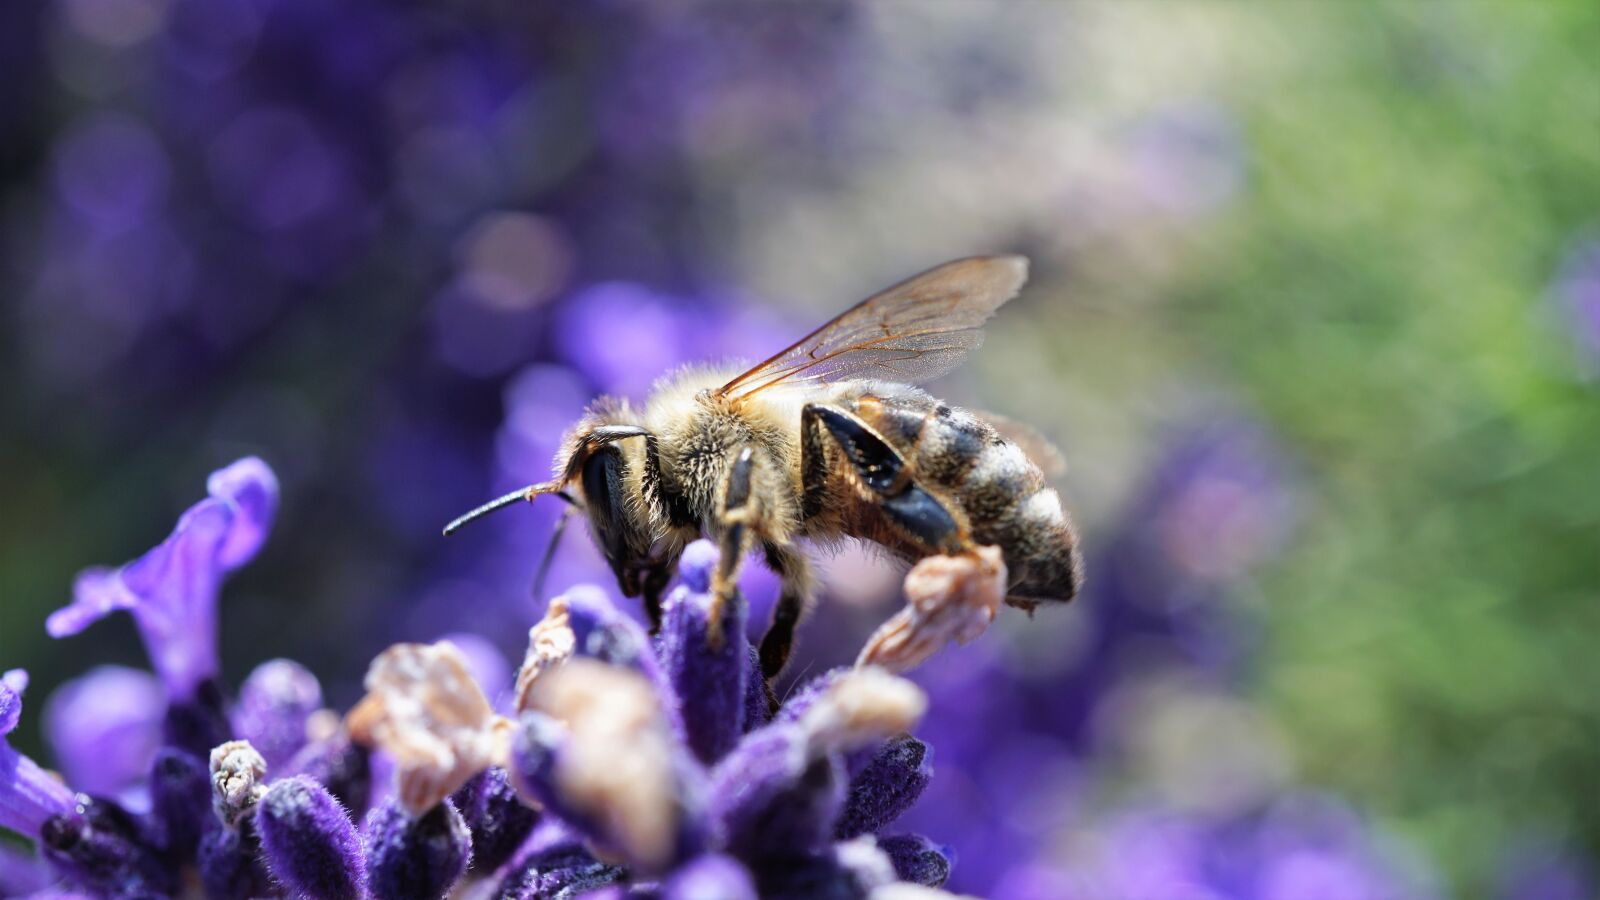 Sony E 30mm F3.5 Macro sample photo. Bee, honey bee, lavender photography